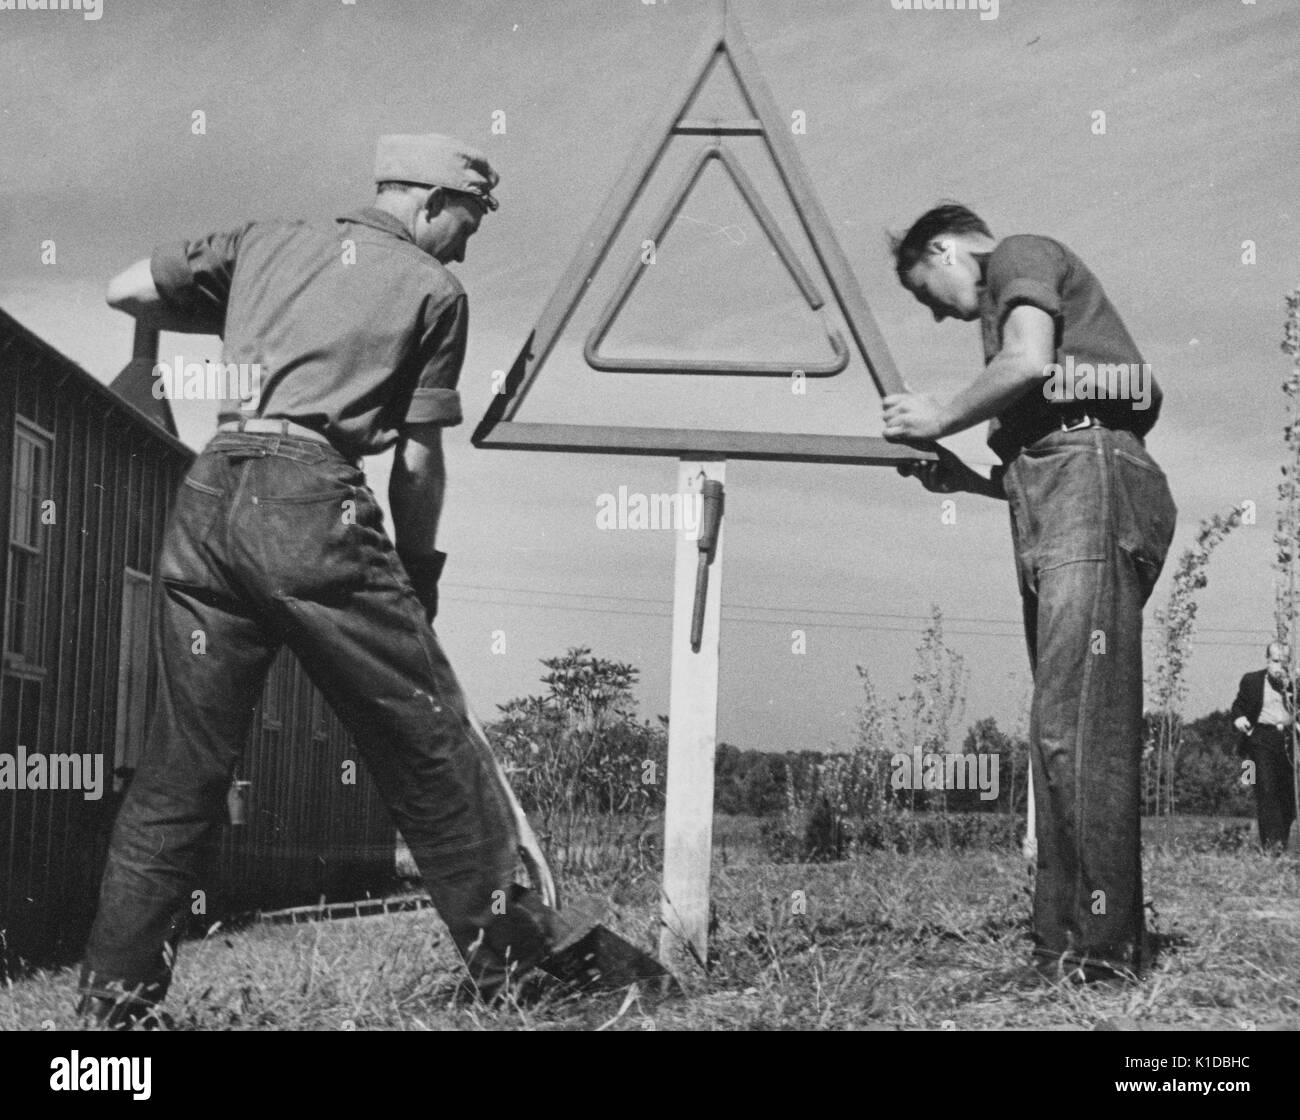 Deux hommes Civilian Conservation Corps (ccc) les travailleurs en uniforme d'ériger un panneau dans un champ, un travailleur à l'aide d'une pelle, l'autre tenant le signe pour le maintenir, Beltsville, Maryland, 1935. à partir de la bibliothèque publique de new york. Banque D'Images